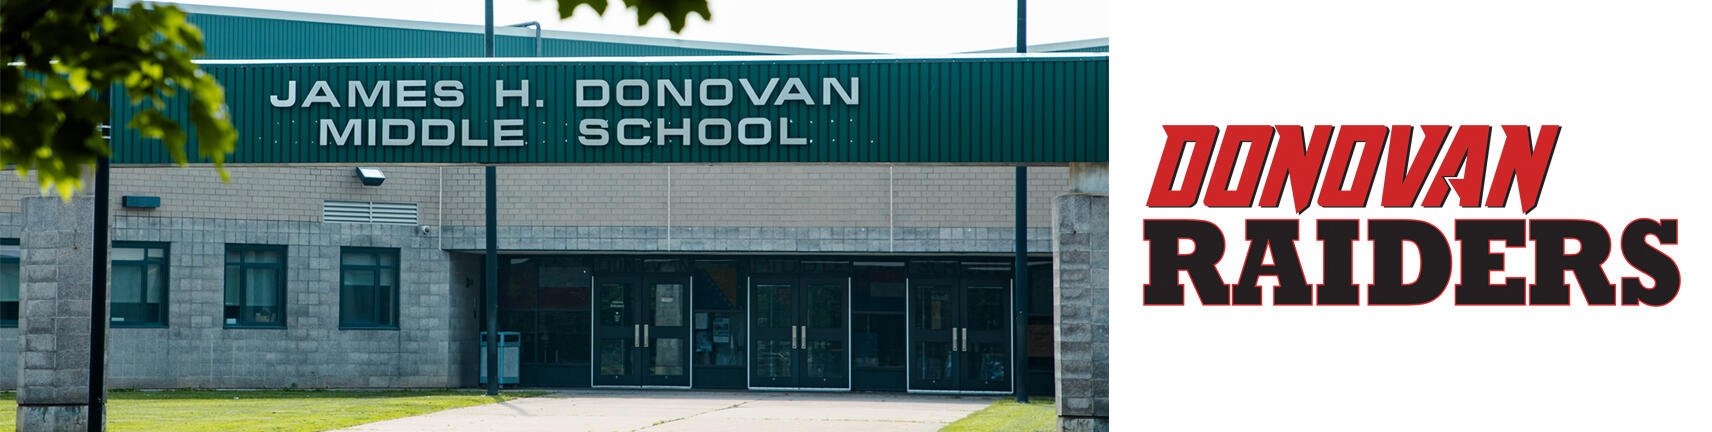 Fotografia e ndërtimit të Donovan School dhe logos Donovan Raiders